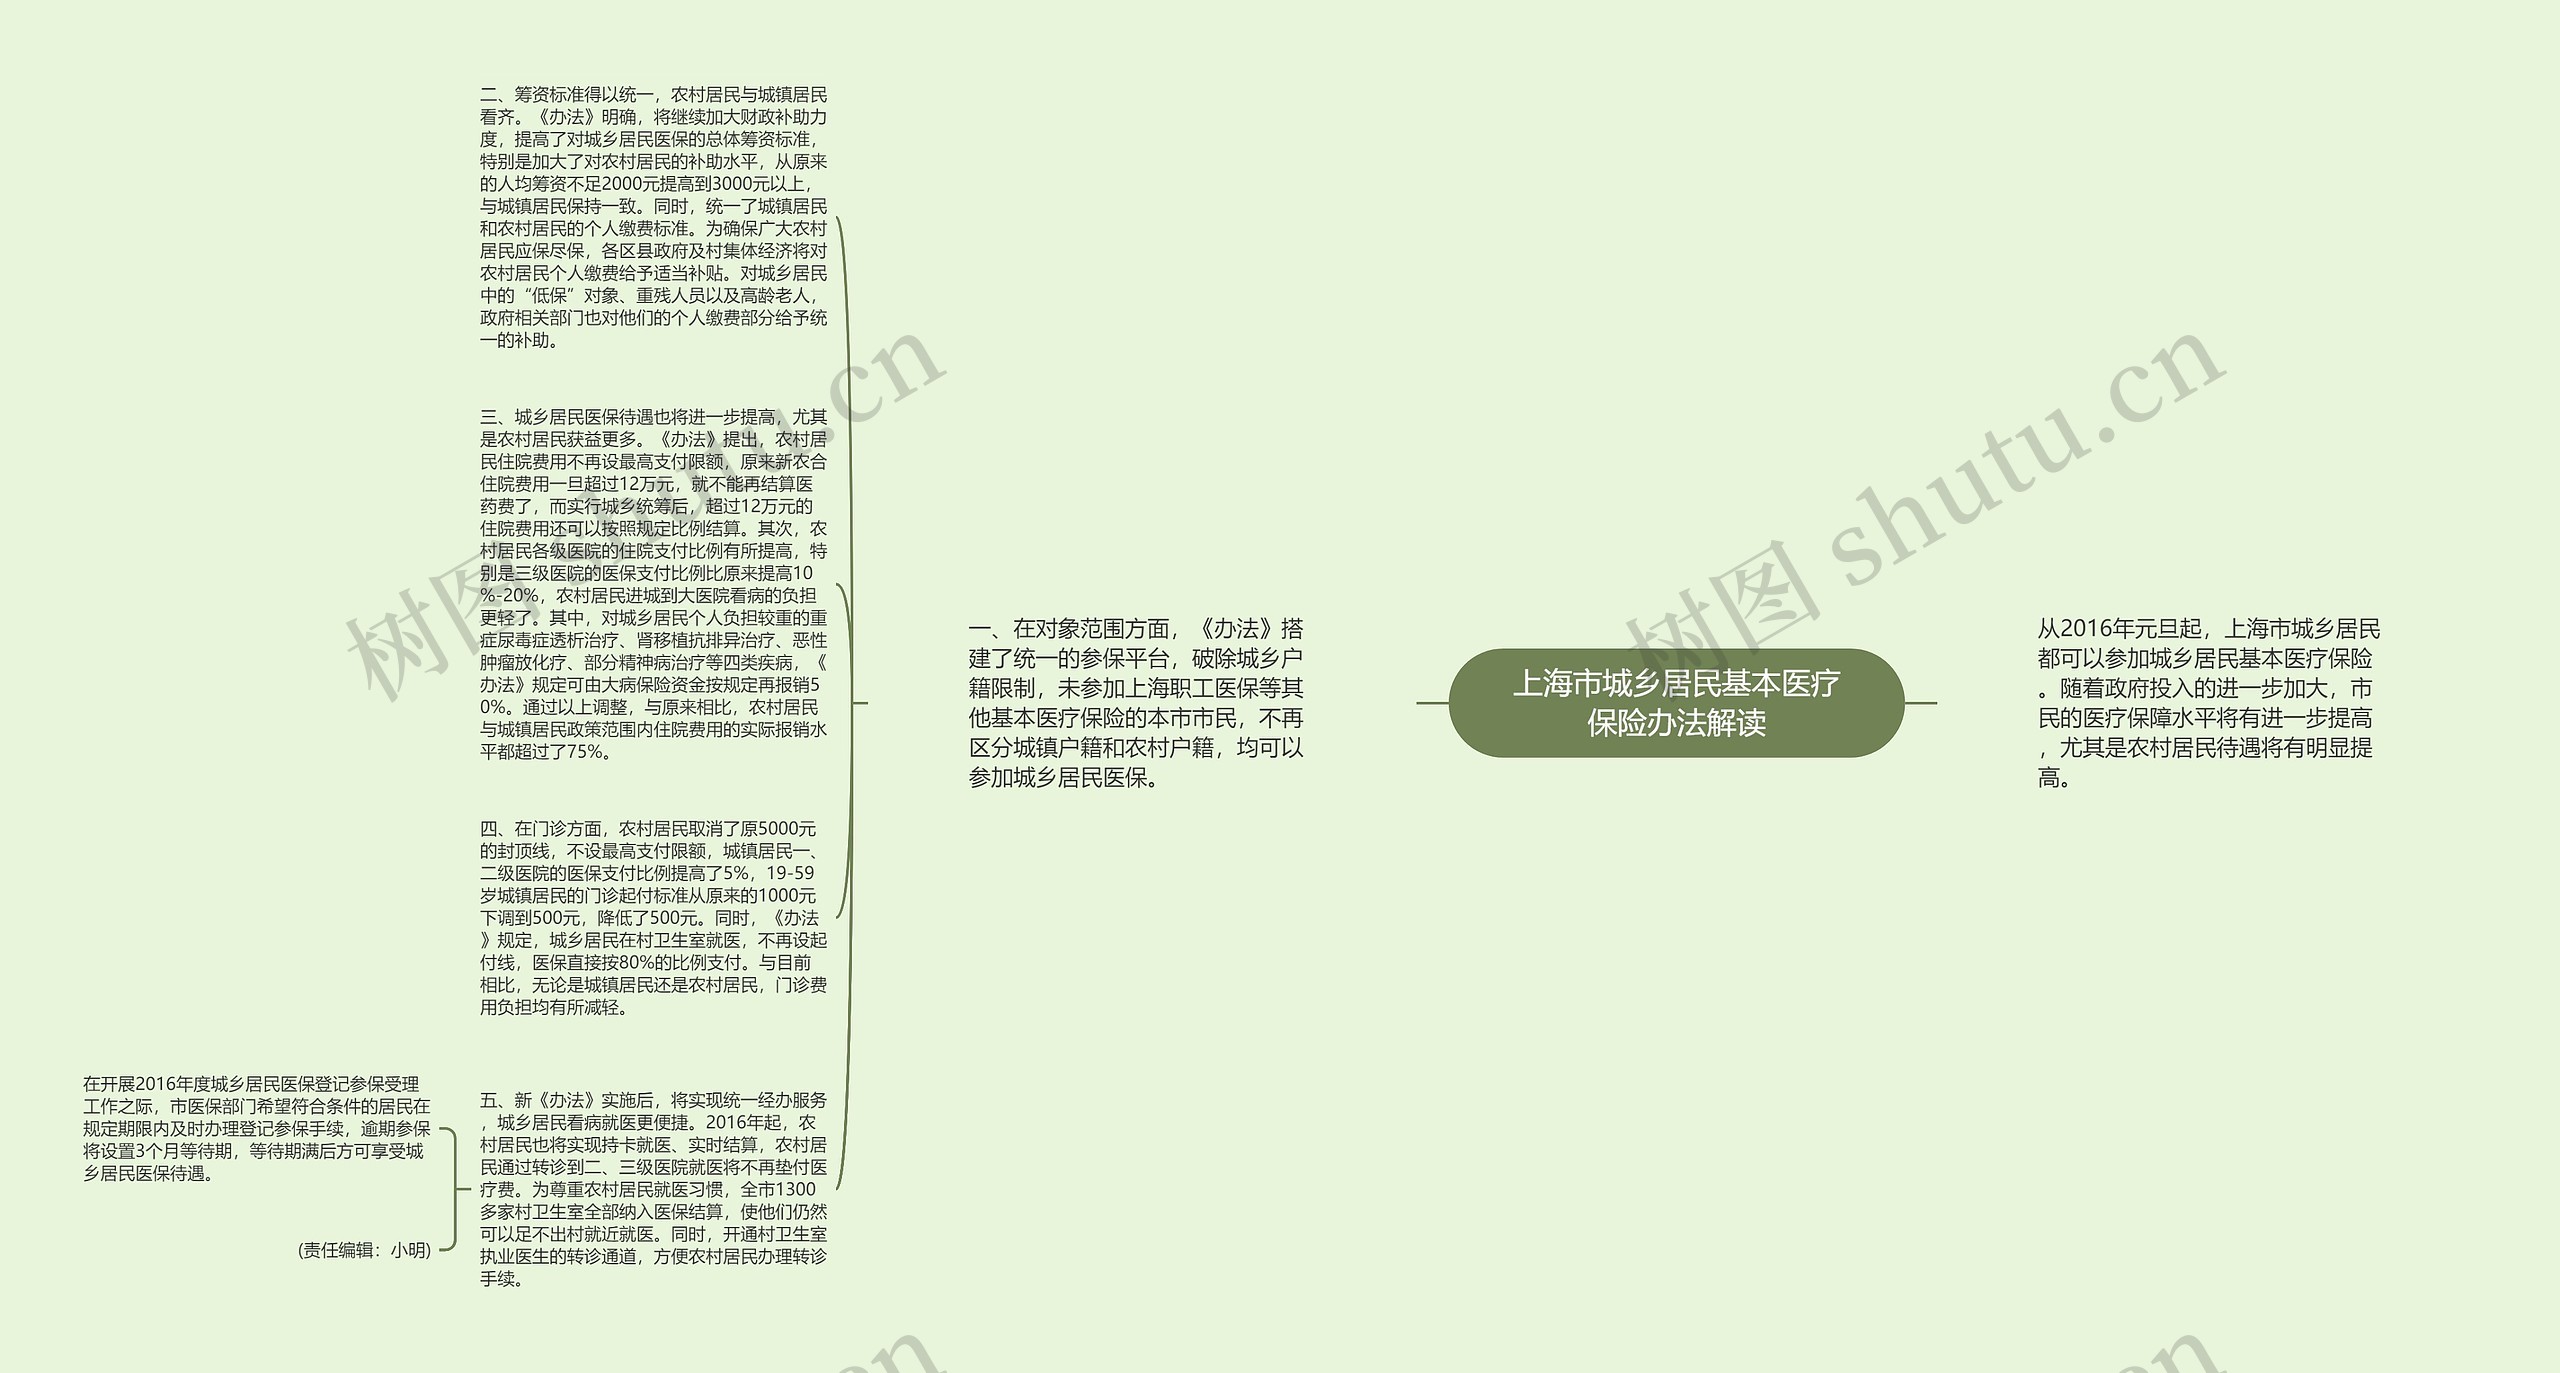 上海市城乡居民基本医疗保险办法解读思维导图